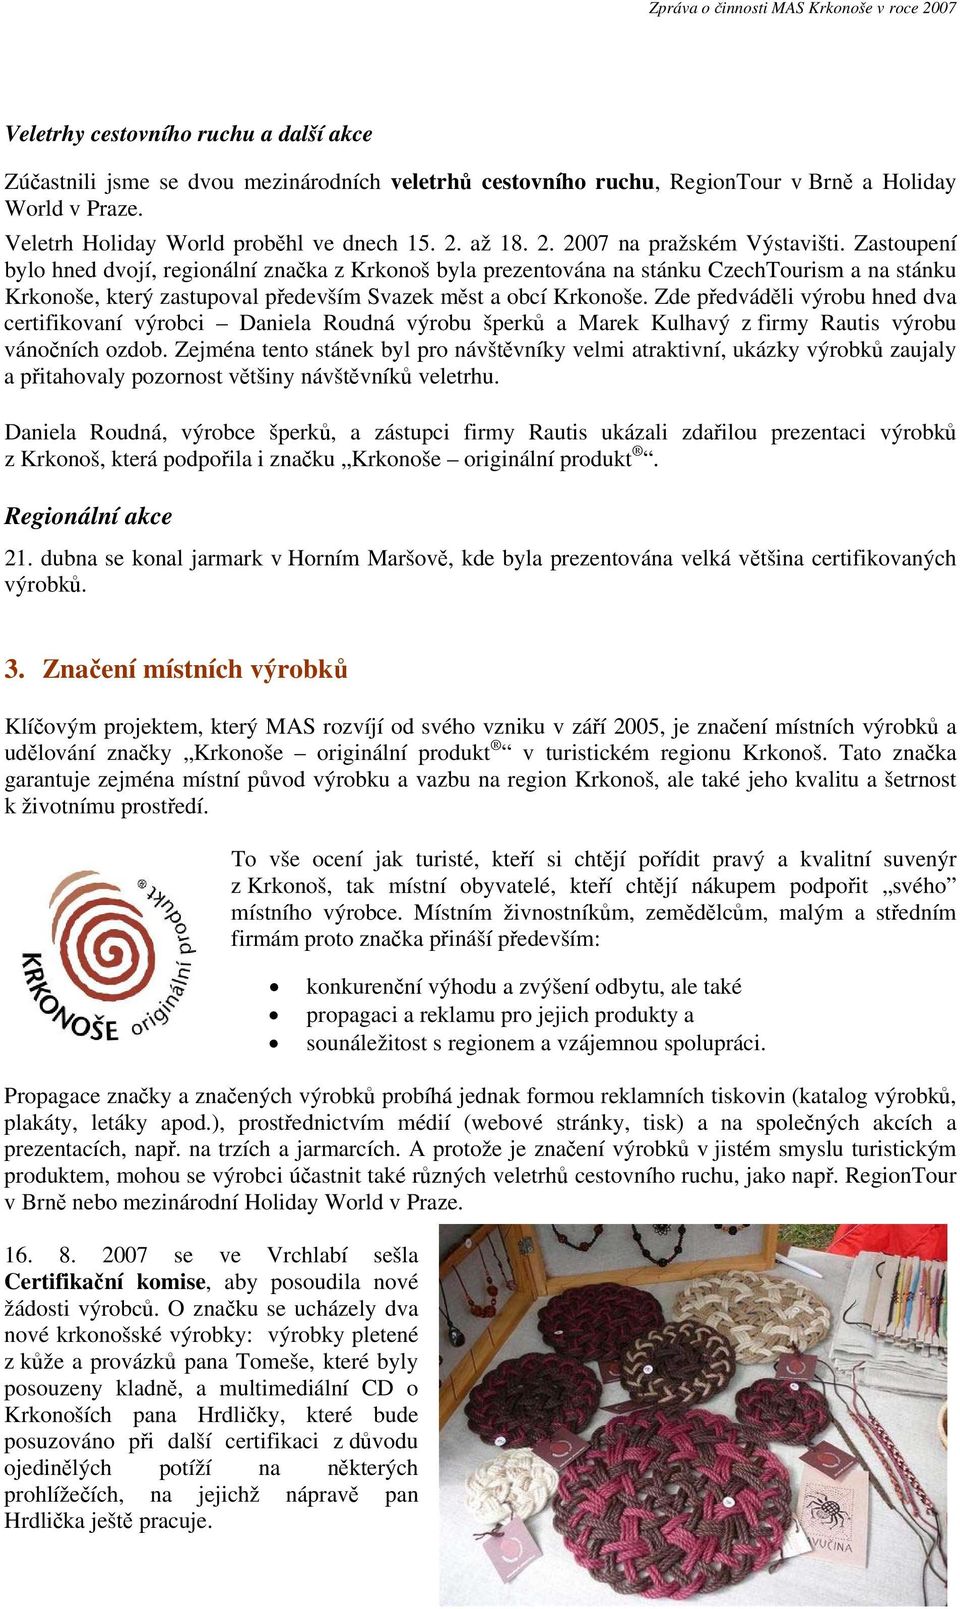 Zastoupení bylo hned dvojí, regionální značka z Krkonoš byla prezentována na stánku CzechTourism a na stánku Krkonoše, který zastupoval především Svazek měst a obcí Krkonoše.